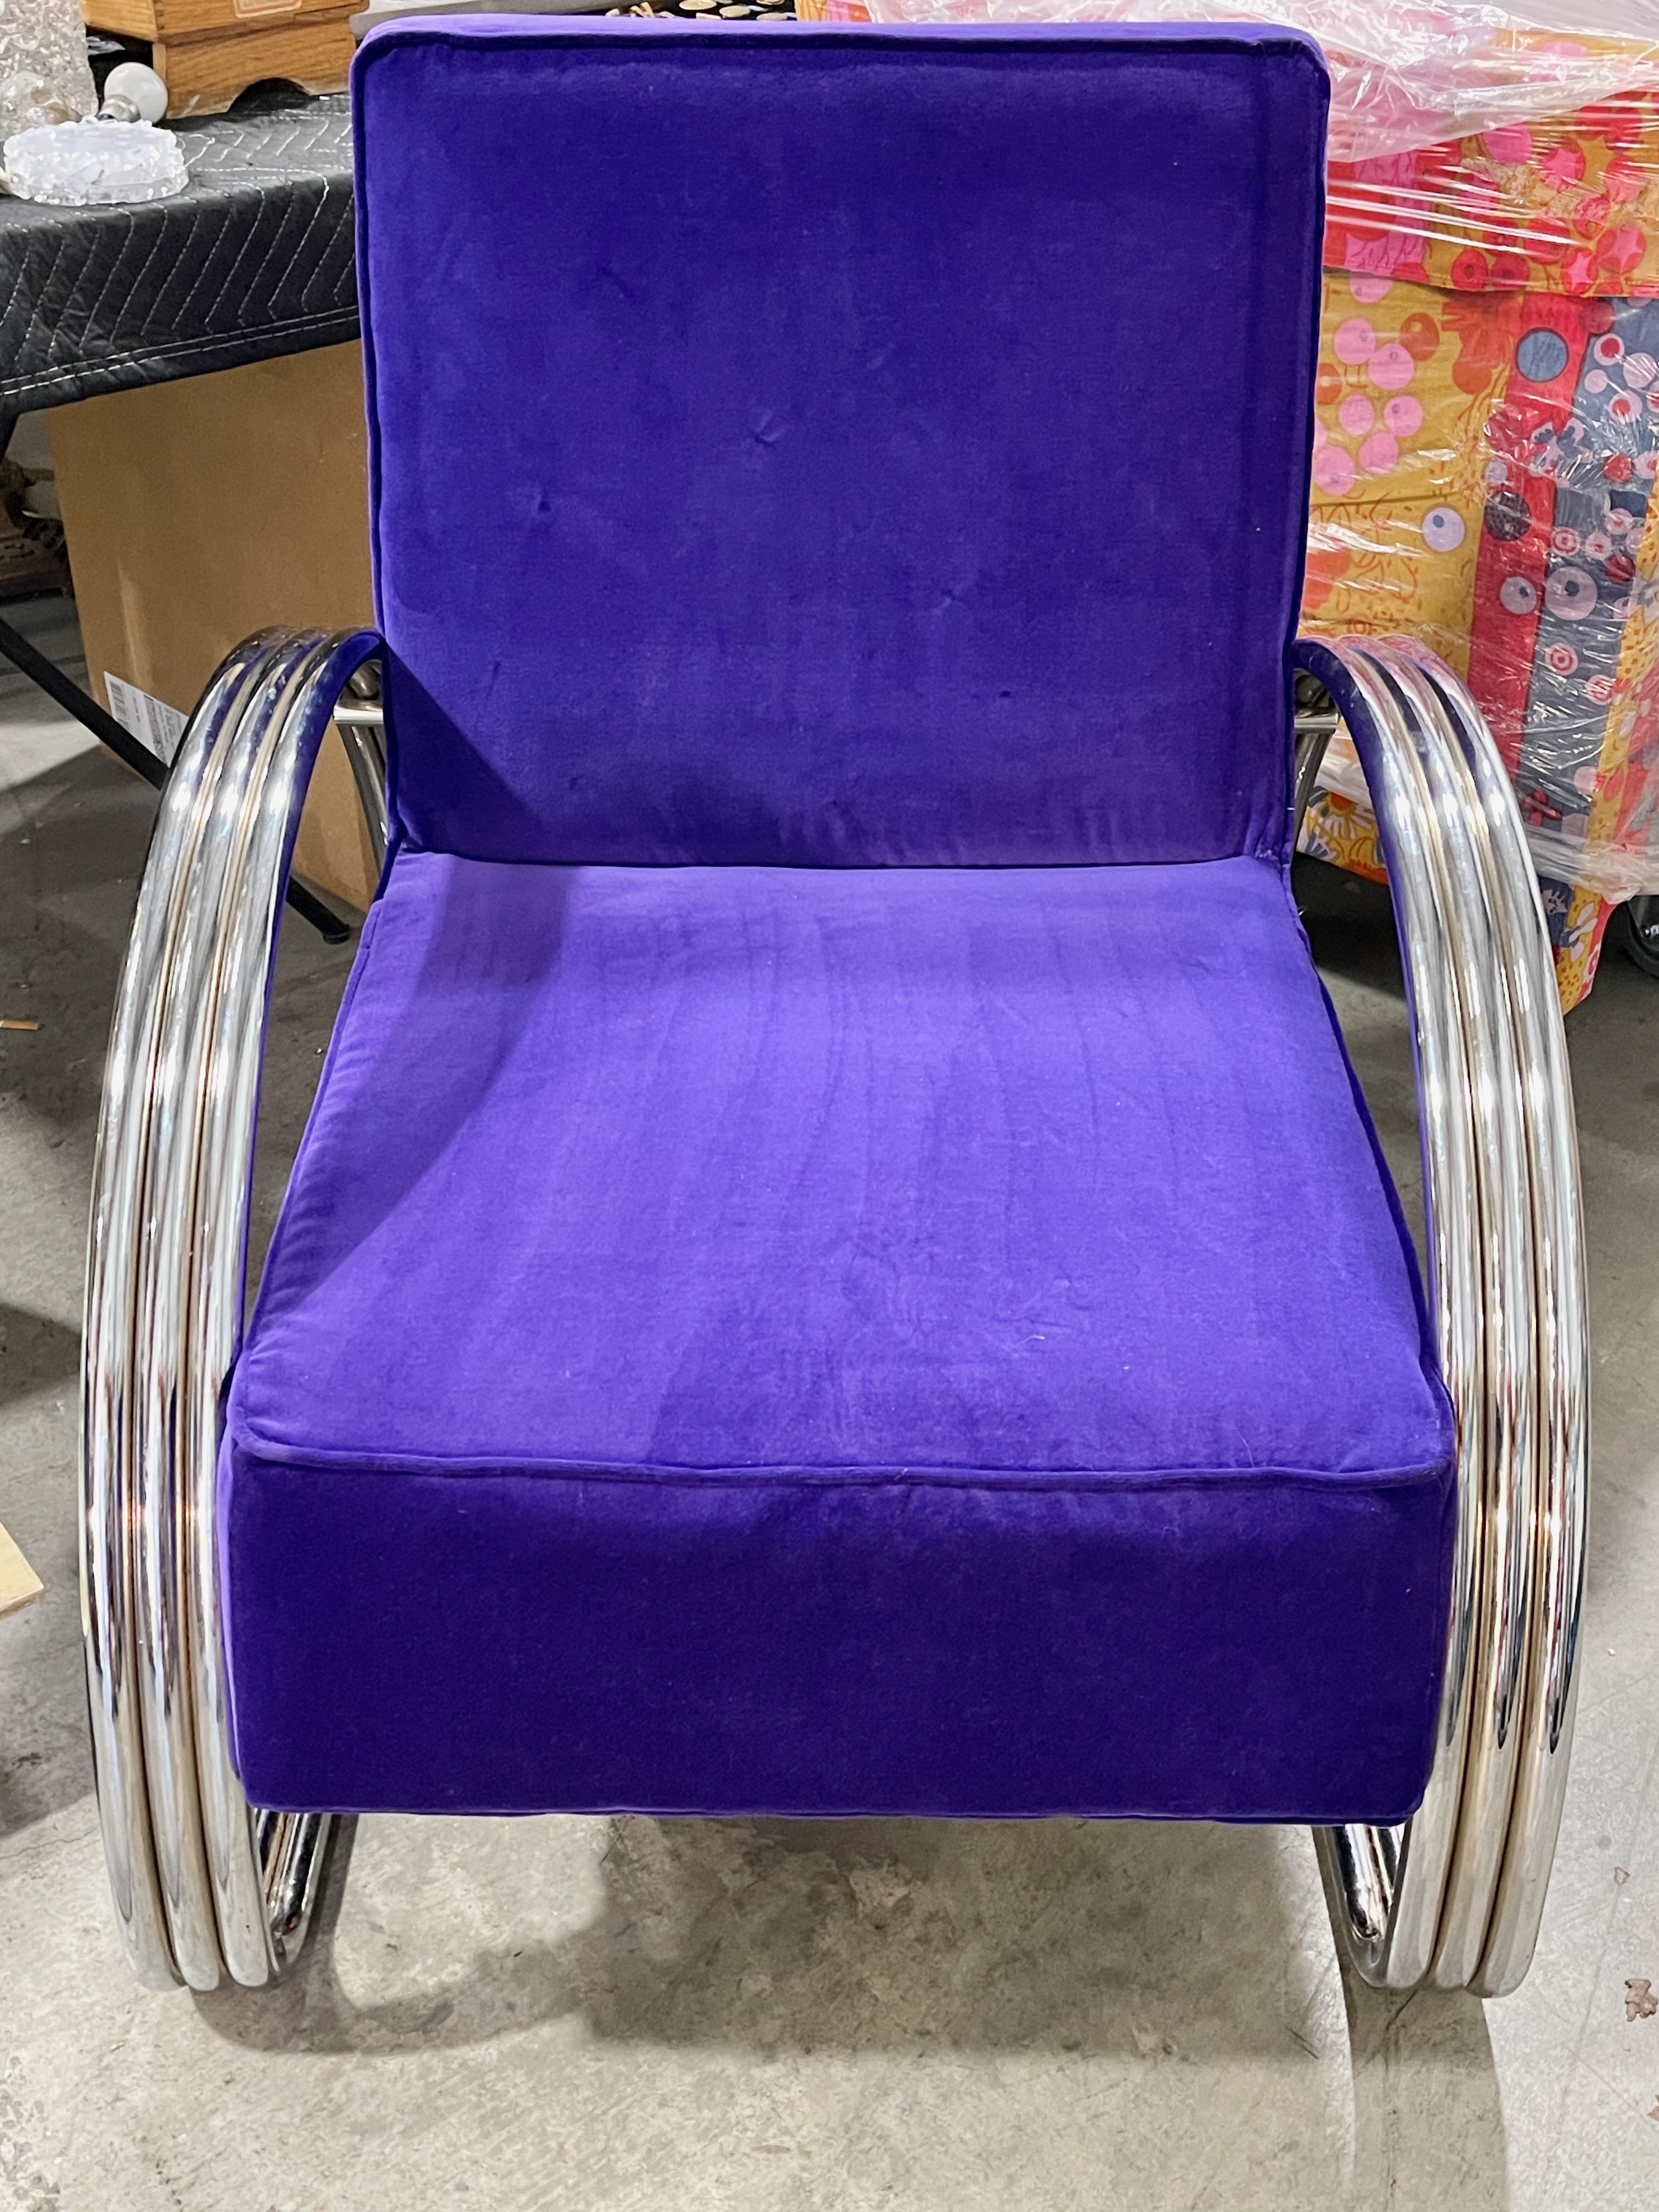 Ein Paar KEM Weber Sessel im Art Deco Stil von Ralph Lauren Home mit dem Namen Hudson Street Lounge Chair.
Der Rahmen ist aus poliertem Edelstahl mit drei Bändern und einer spiegelverchromten Oberfläche.
Von uns neu gepolstert (Dez. 2023) in einem